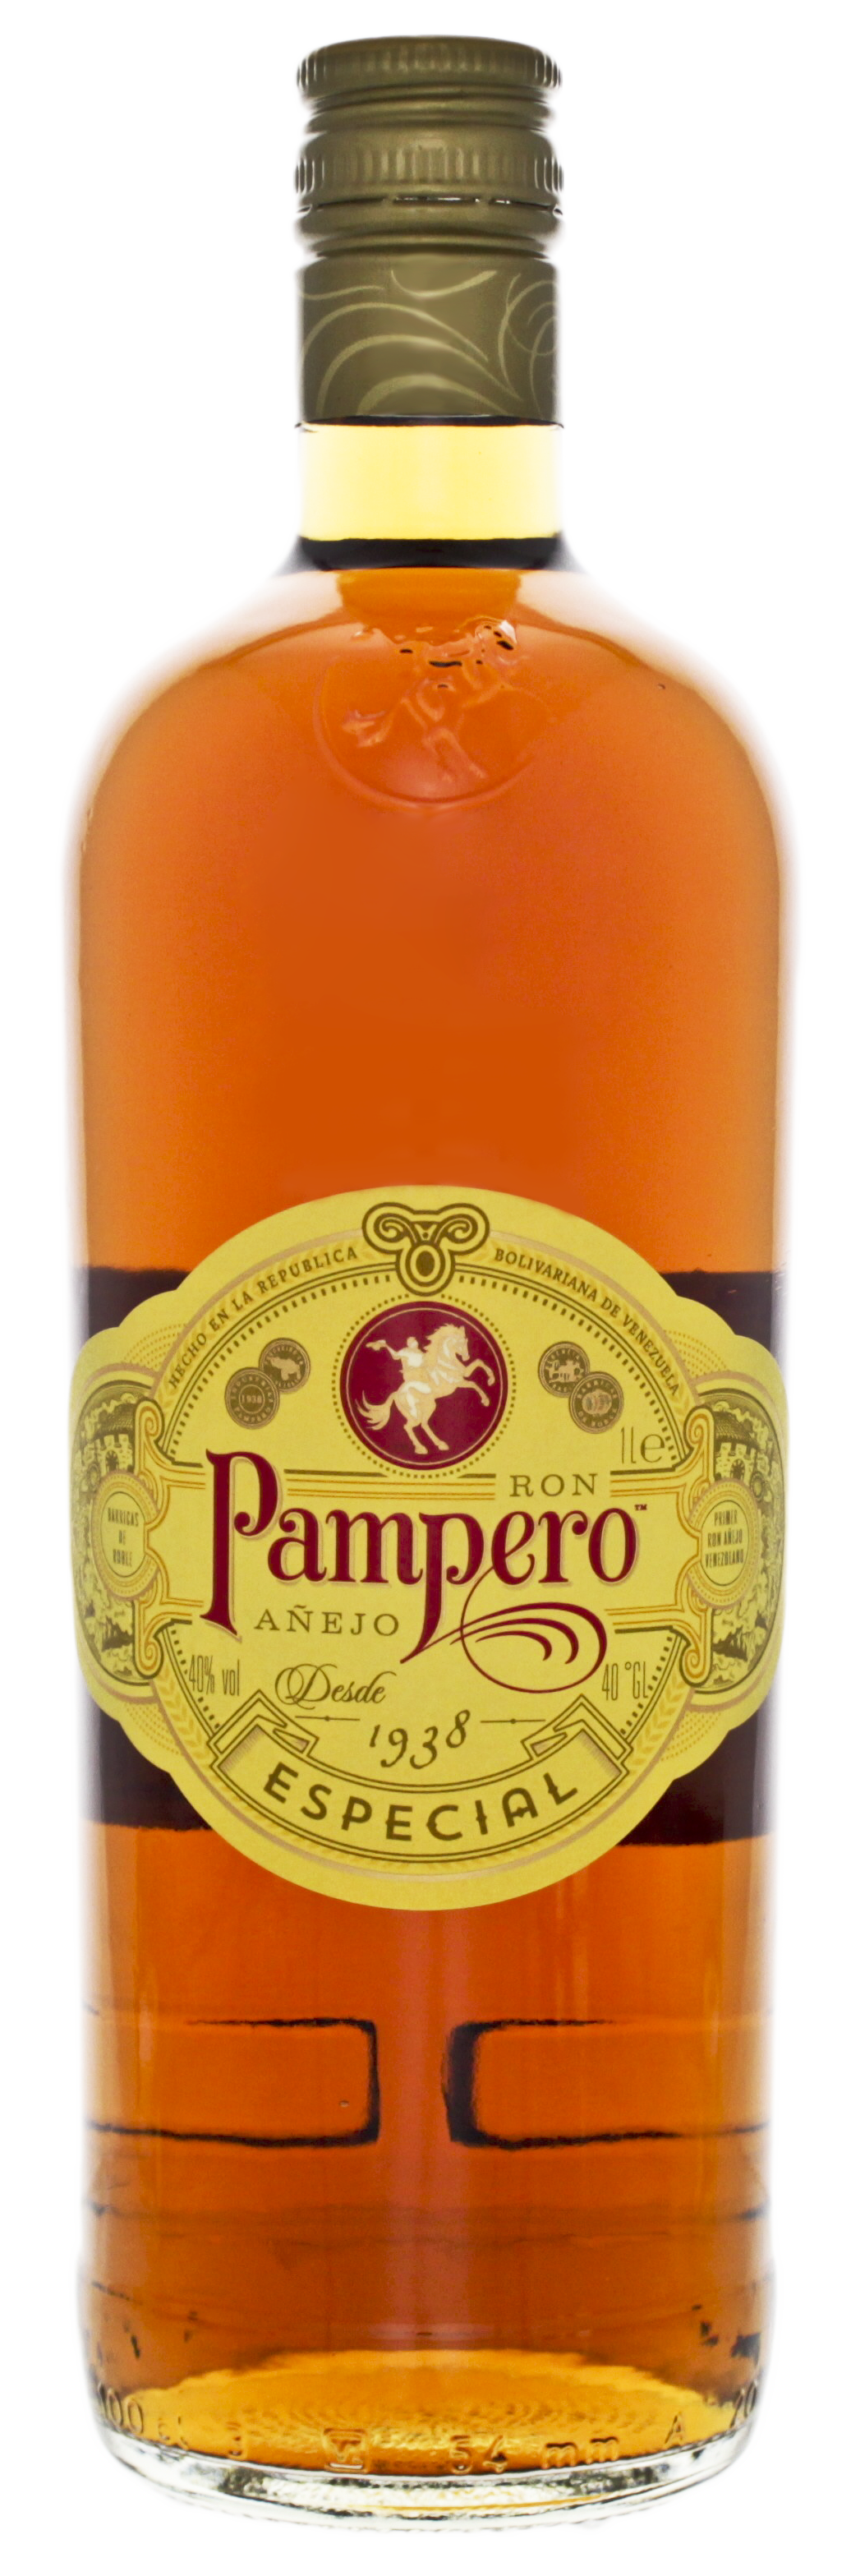 Rum Especial Online Pampero Rum Shop günstig Anejo - Spirituosen kaufen!